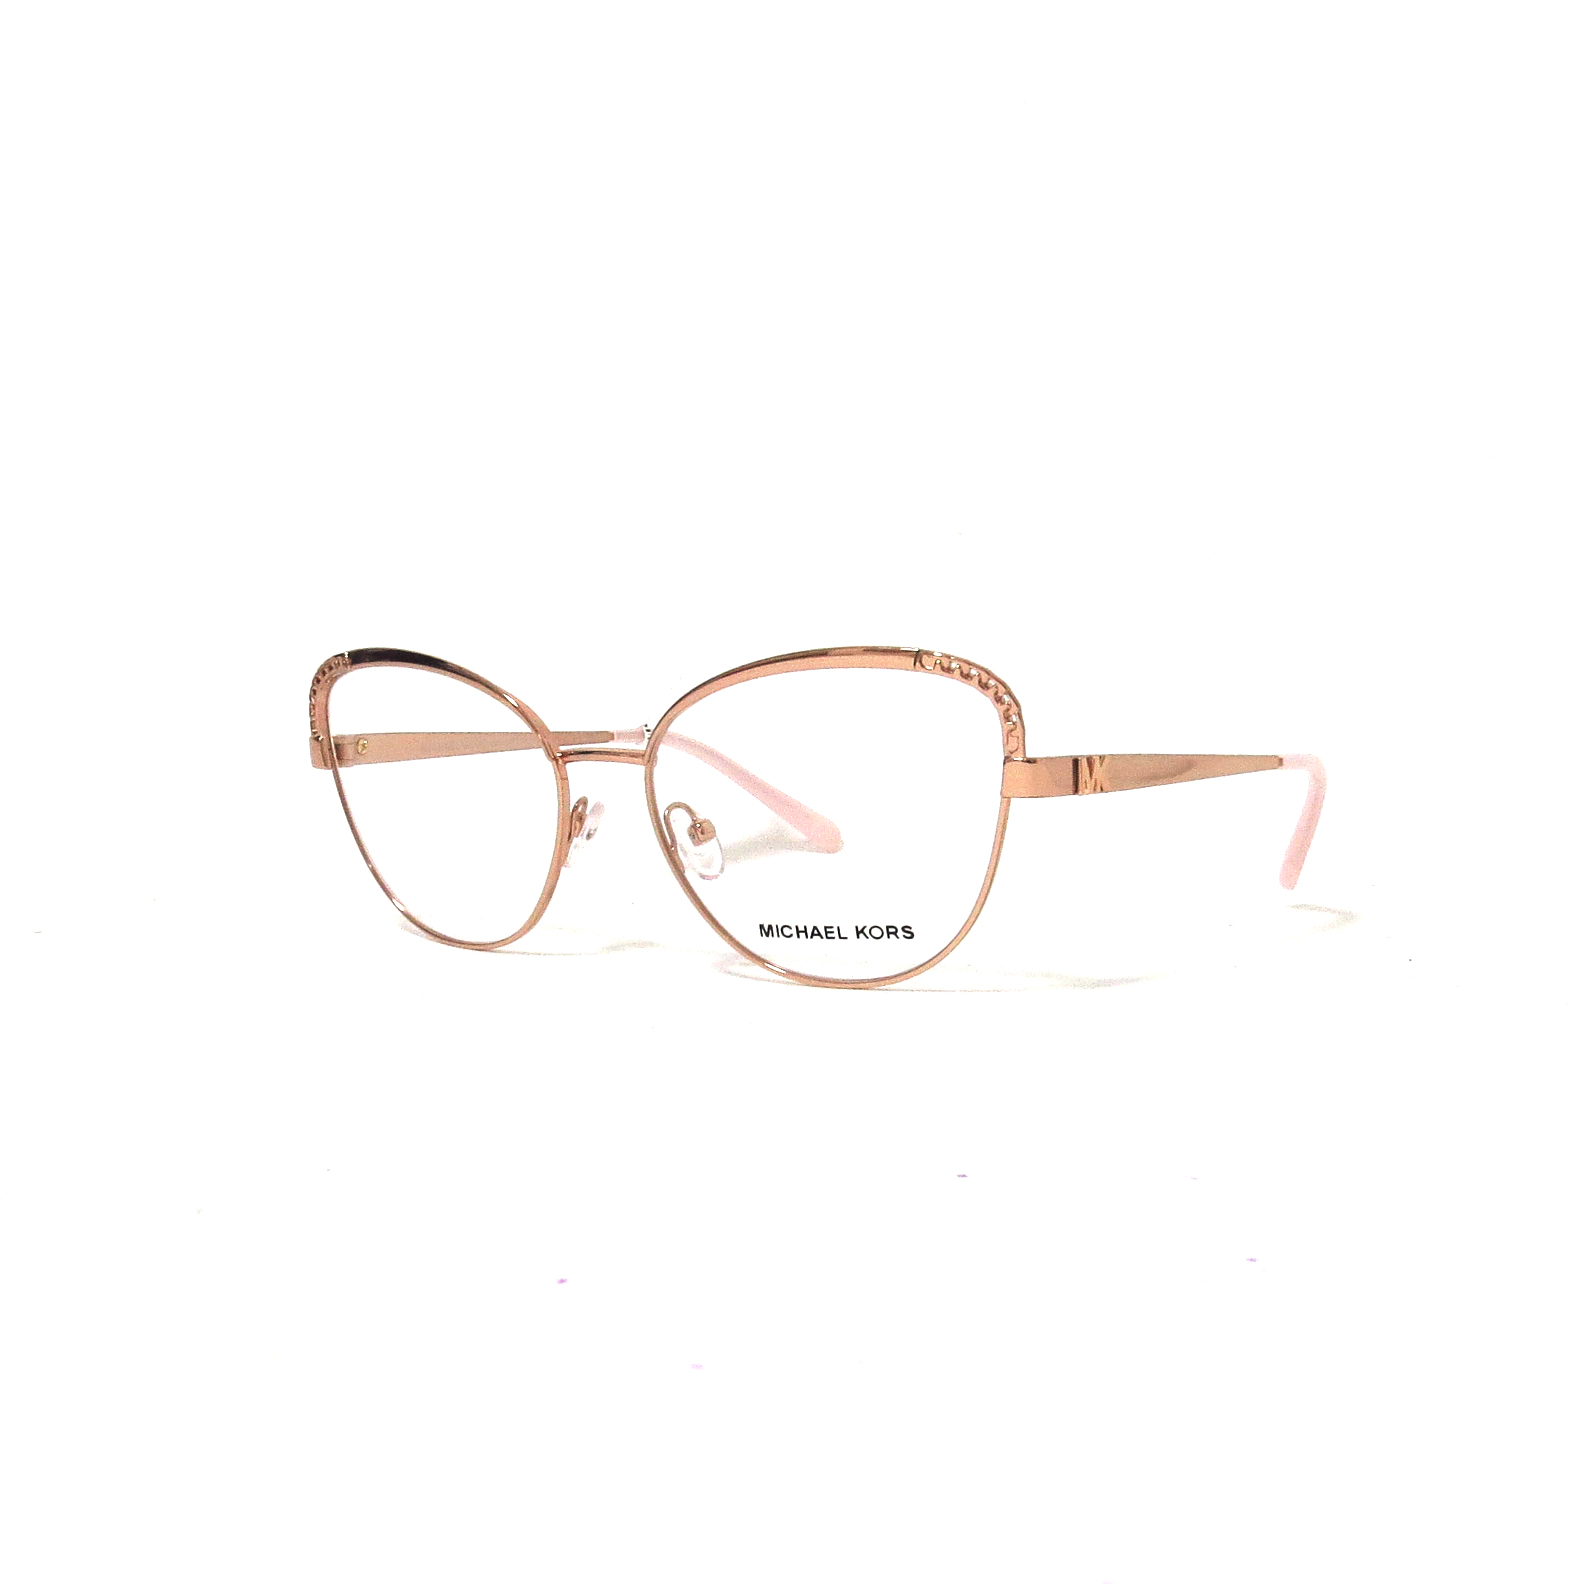 Óptica gafas | KORS - 1108 Óptica las gafas